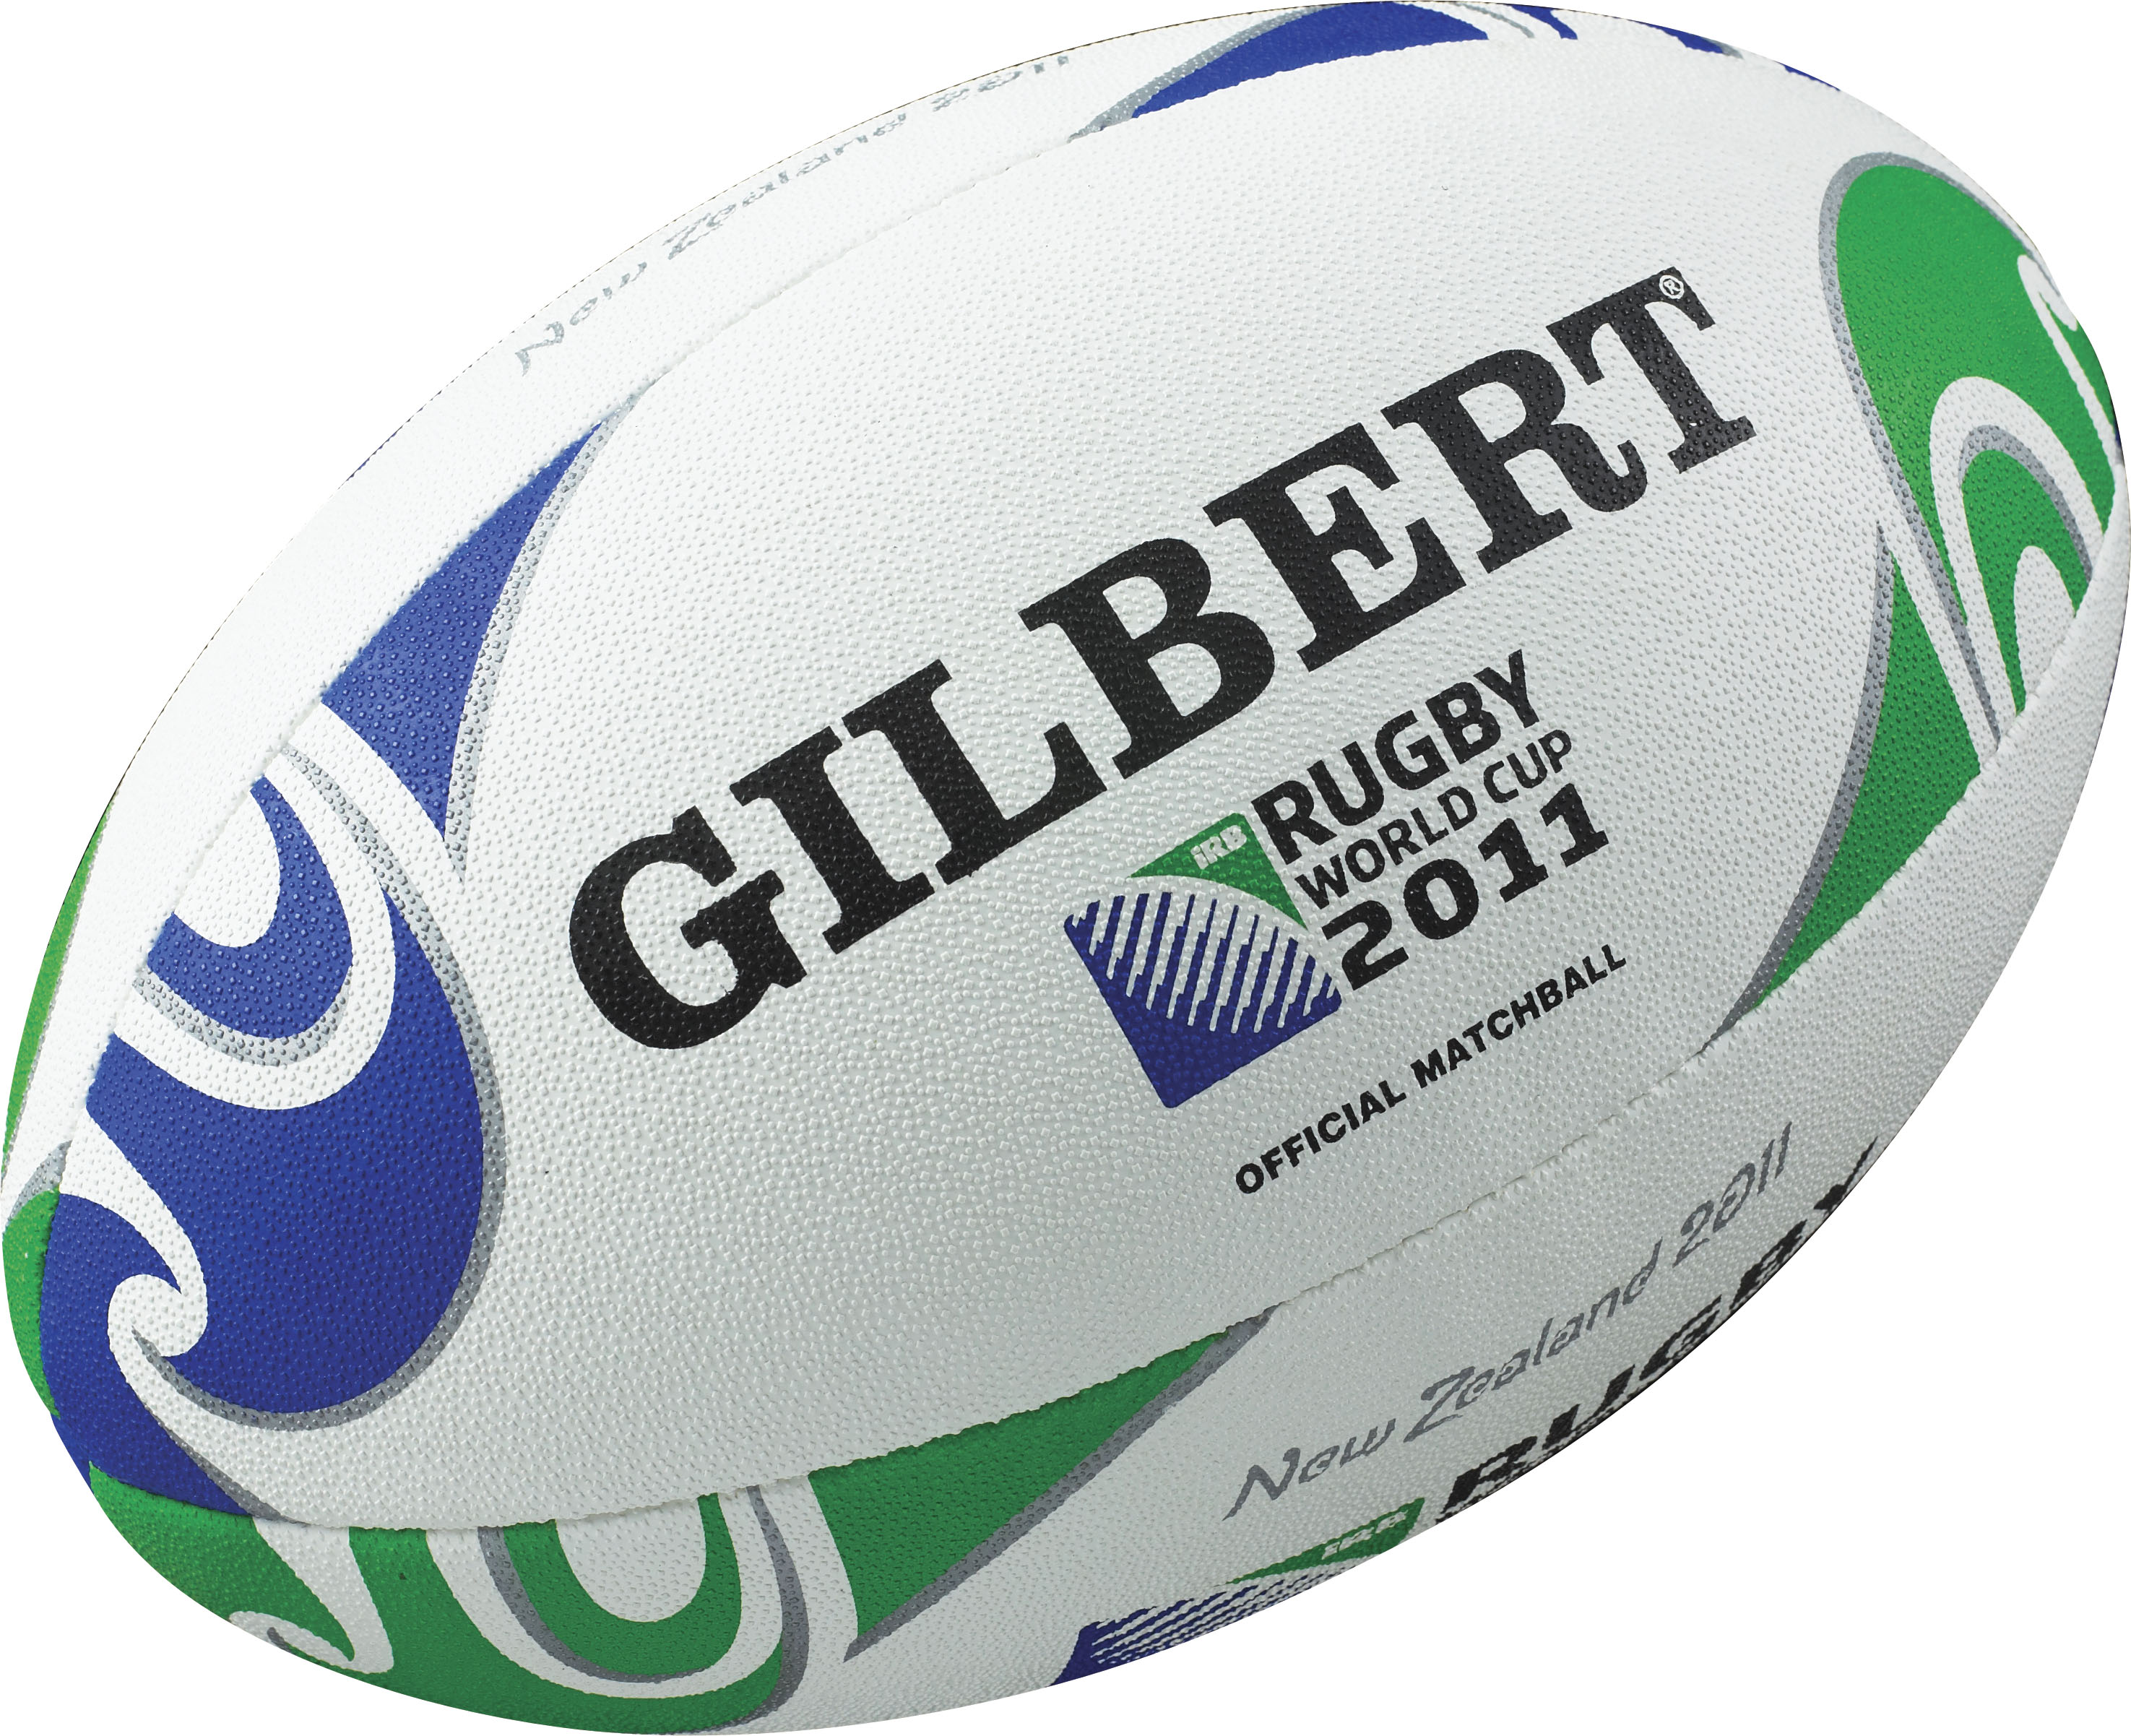 Ball Fact Sheet | Follow the Rugby Ball